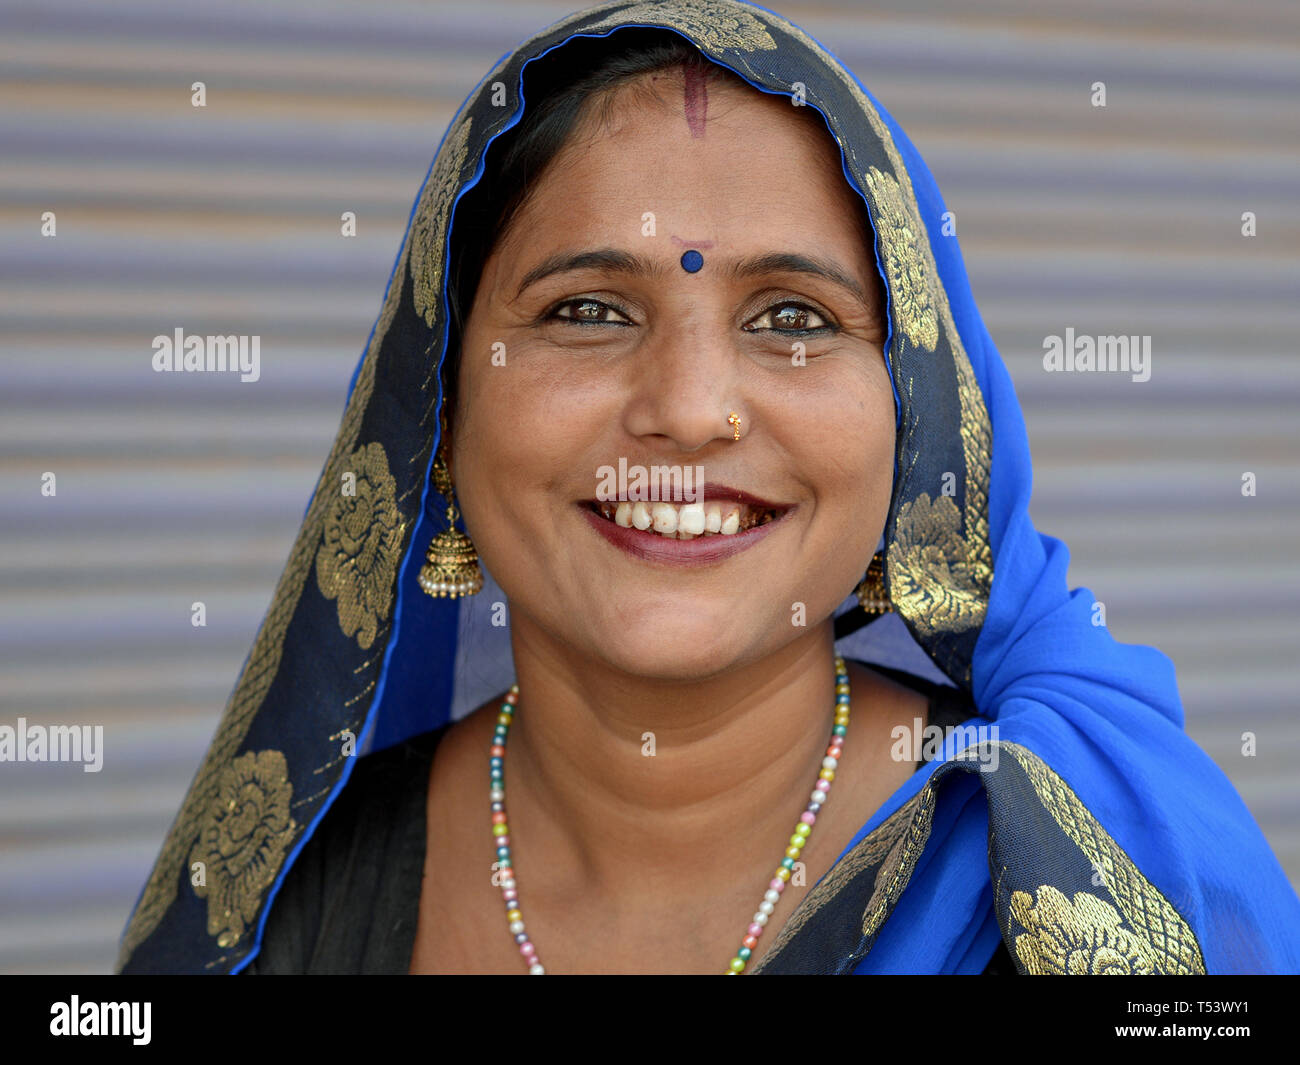 Junge indische Rajasthani Frau mit blauen Bindi auf ihrer Stirn und blauen Kopftuch (DUPATTA) Lächeln für die Kamera. Stockfoto